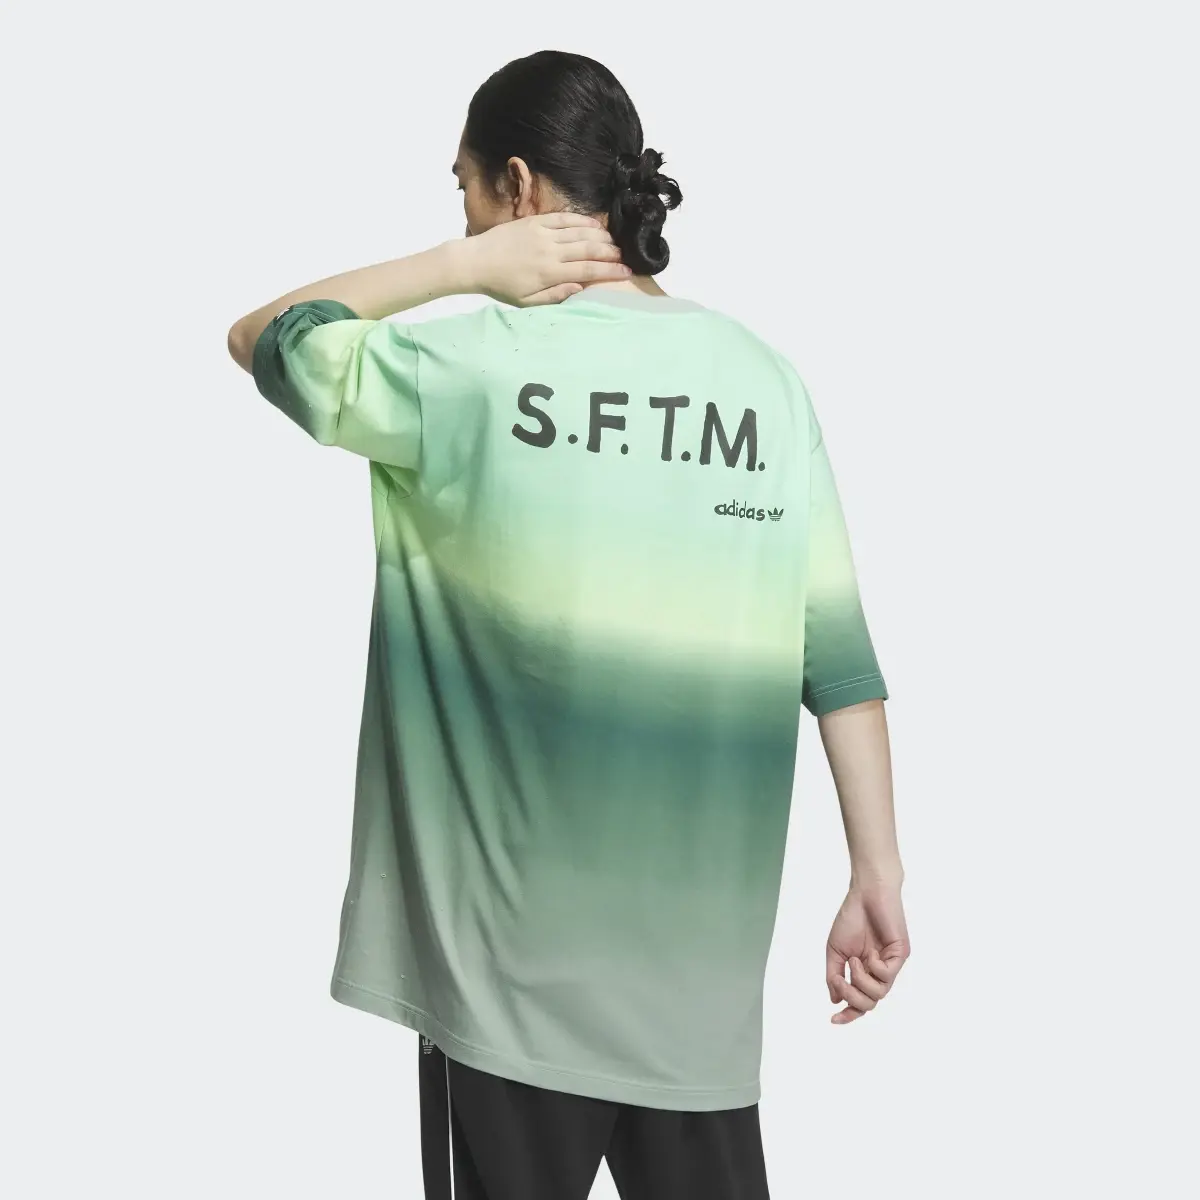 Adidas Koszulka SFTM Short Sleeve (Gender Neutral). 3